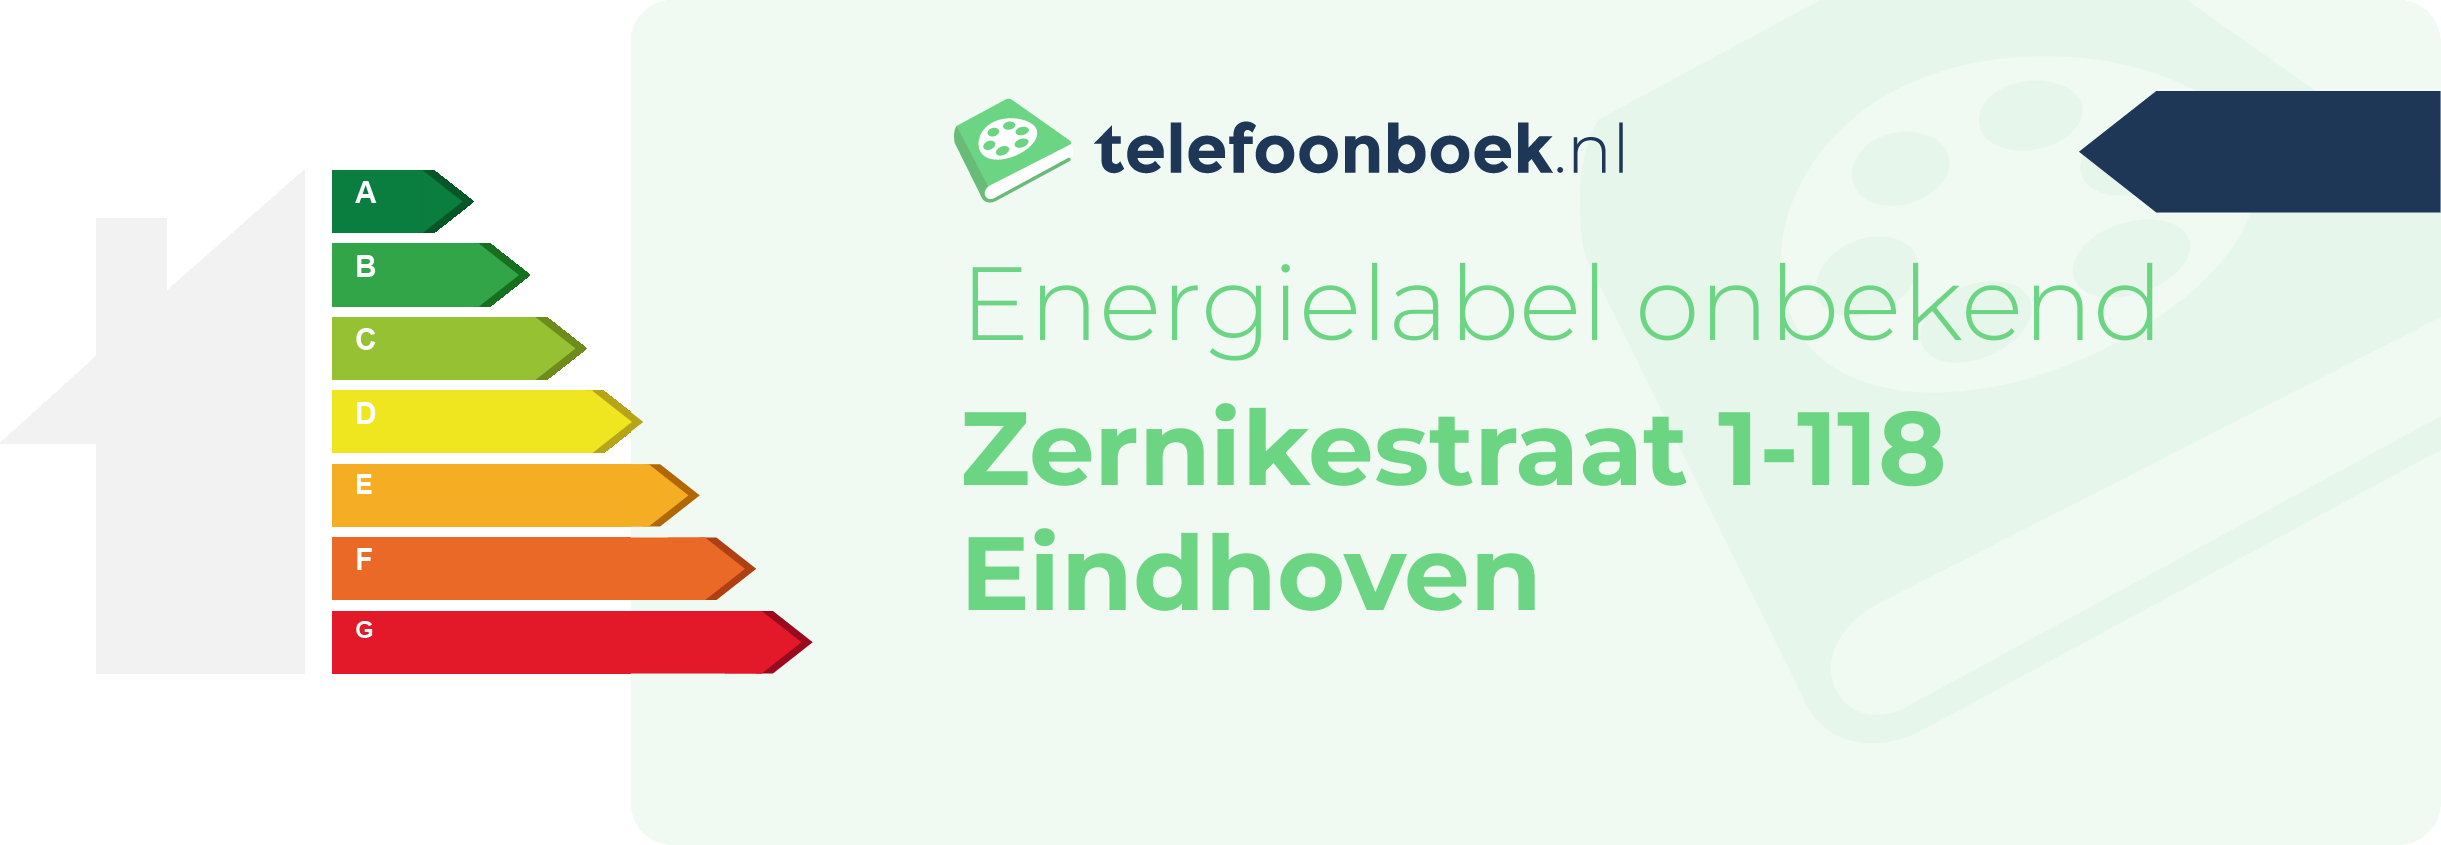 Energielabel Zernikestraat 1-118 Eindhoven